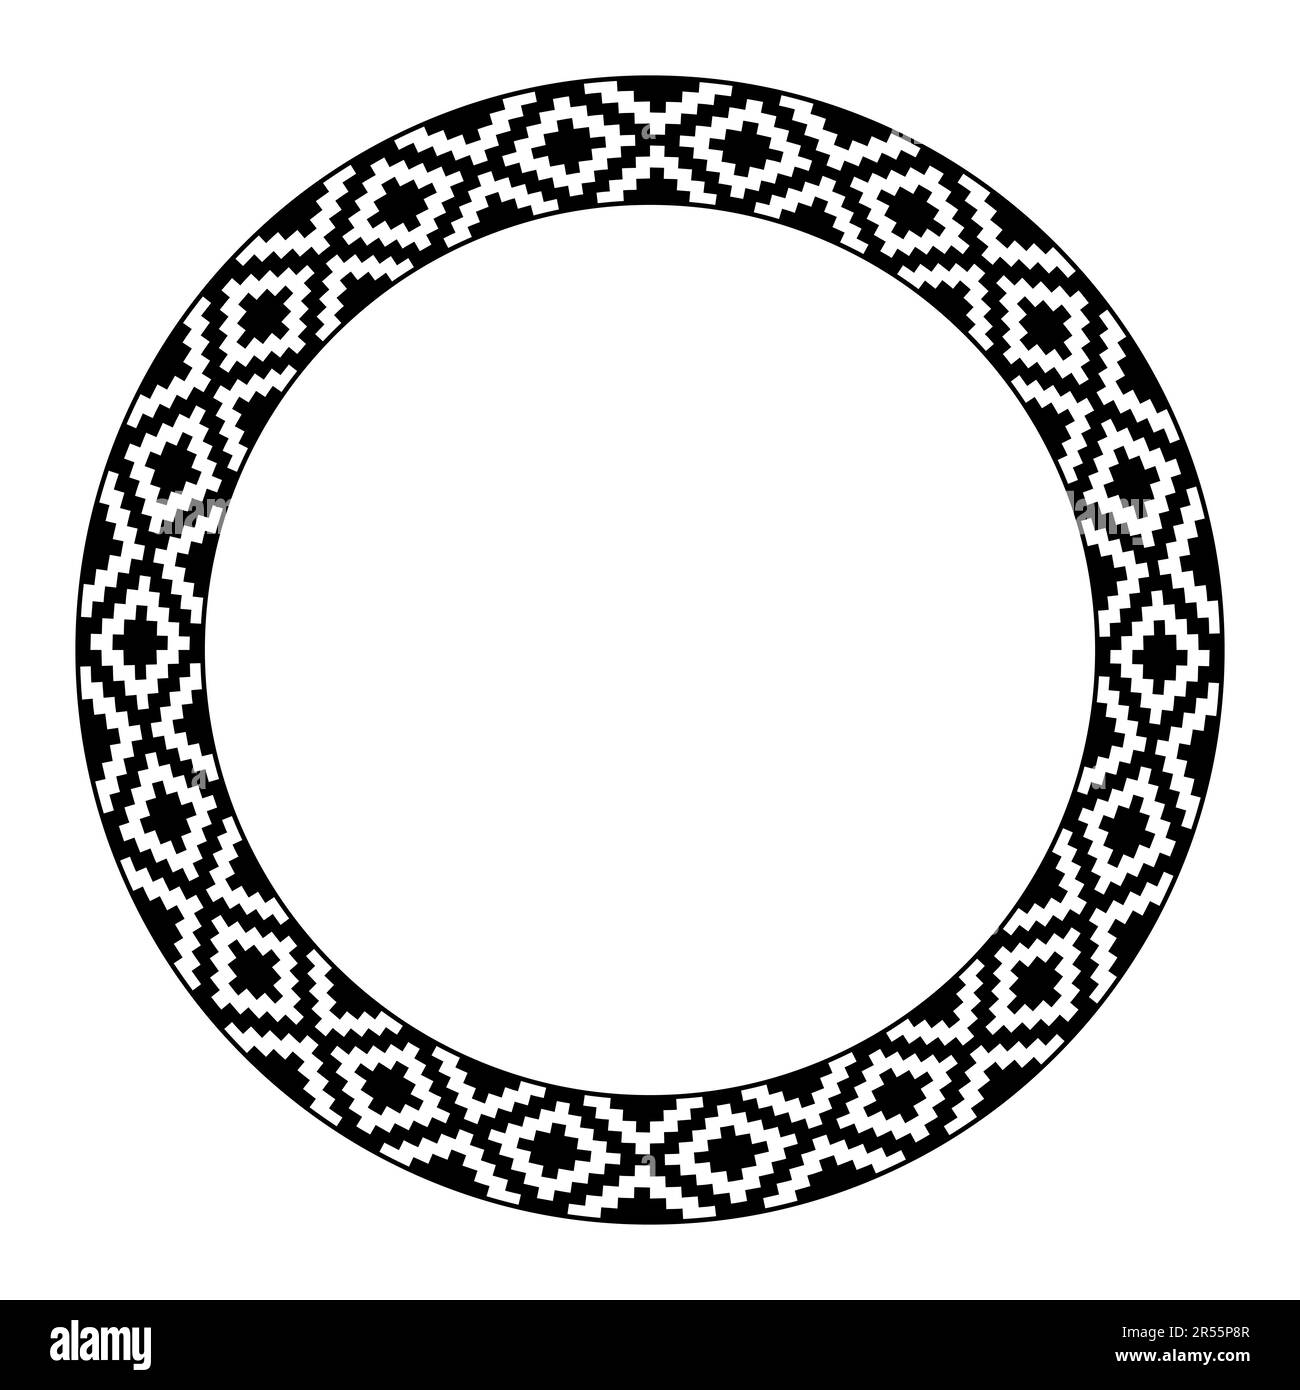 Azteken-Schlangen-Hautmuster, kreisförmiger Rahmen. Dekorativer Rahmen, aus einem Schlangenhautmotiv, oft verwendet in der antiken Kunst Mittelamerikas. Stockfoto